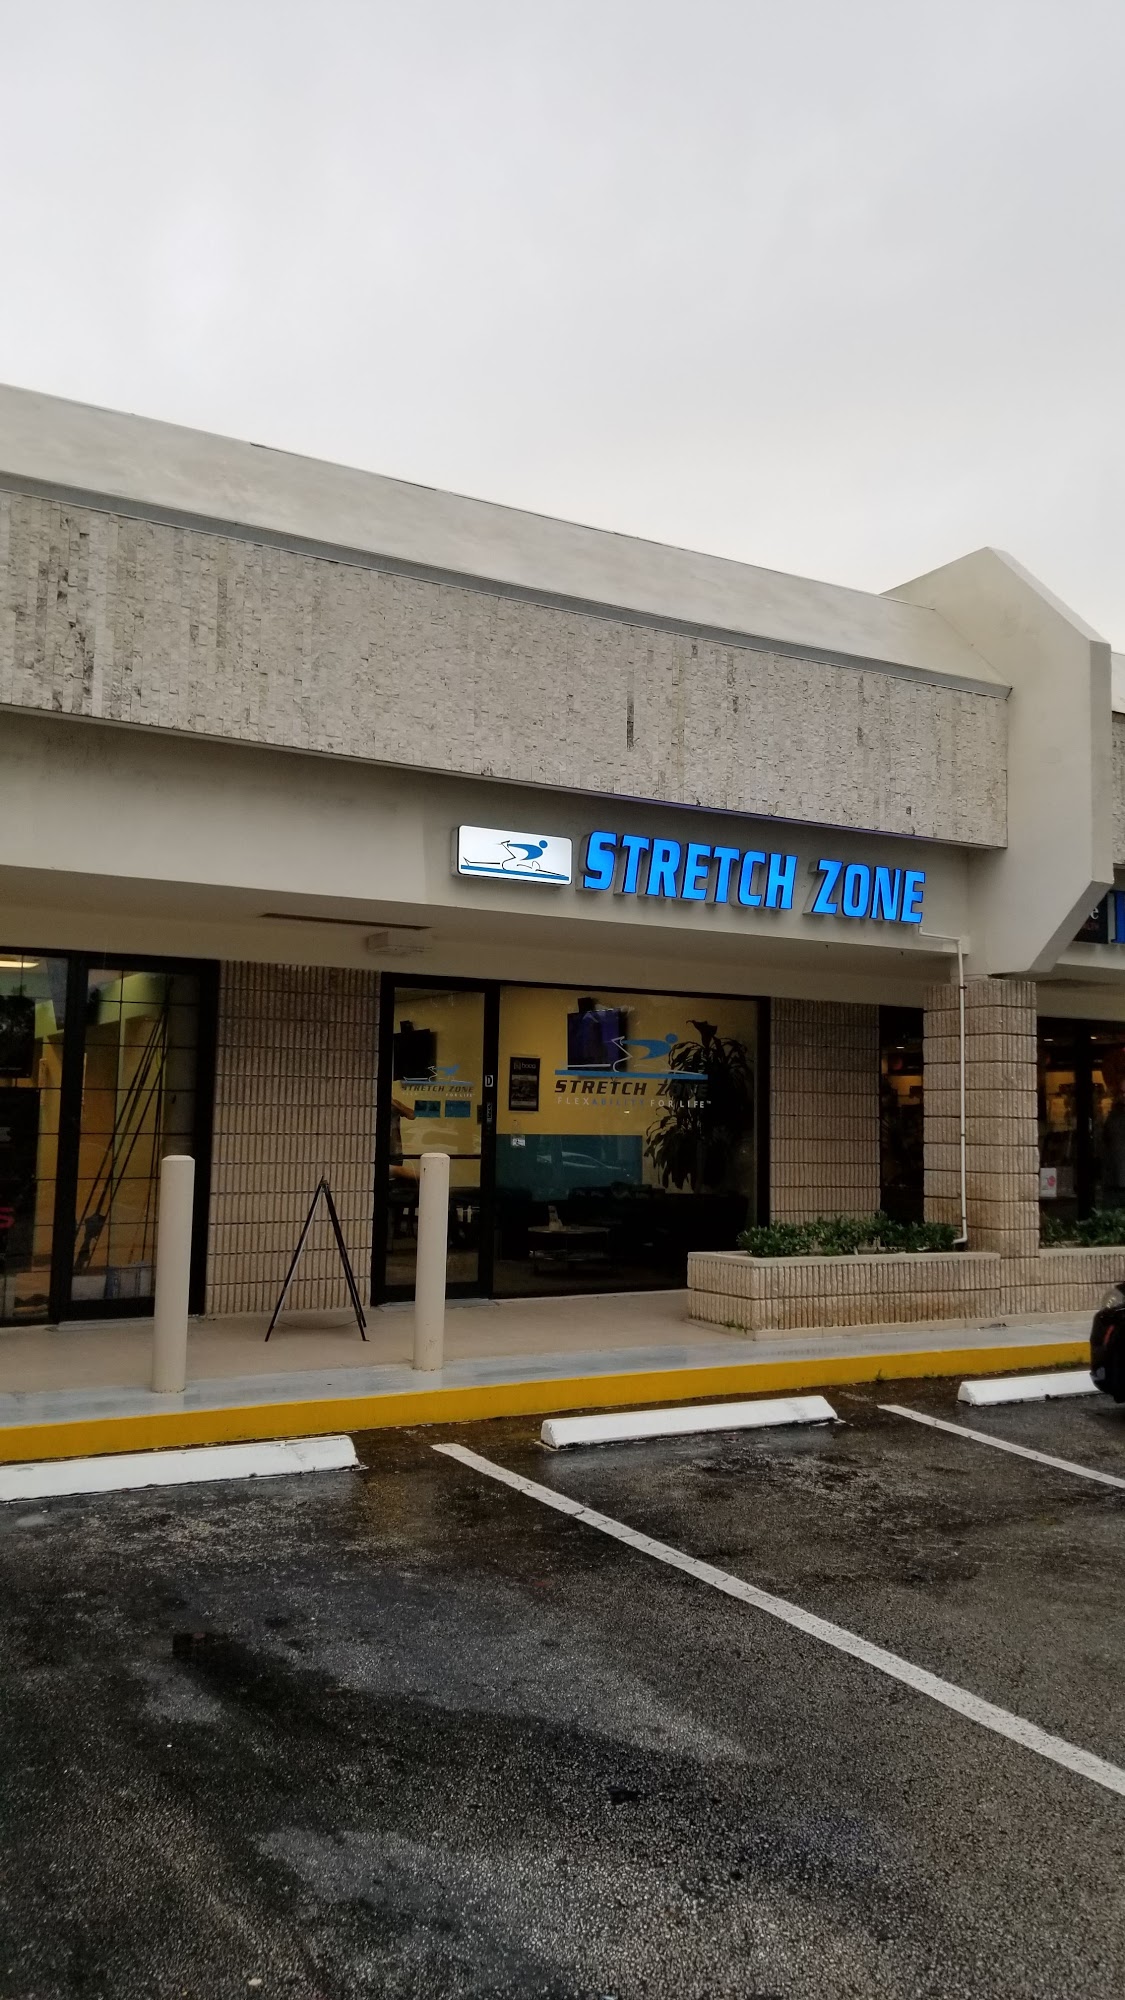 Stretch Zone